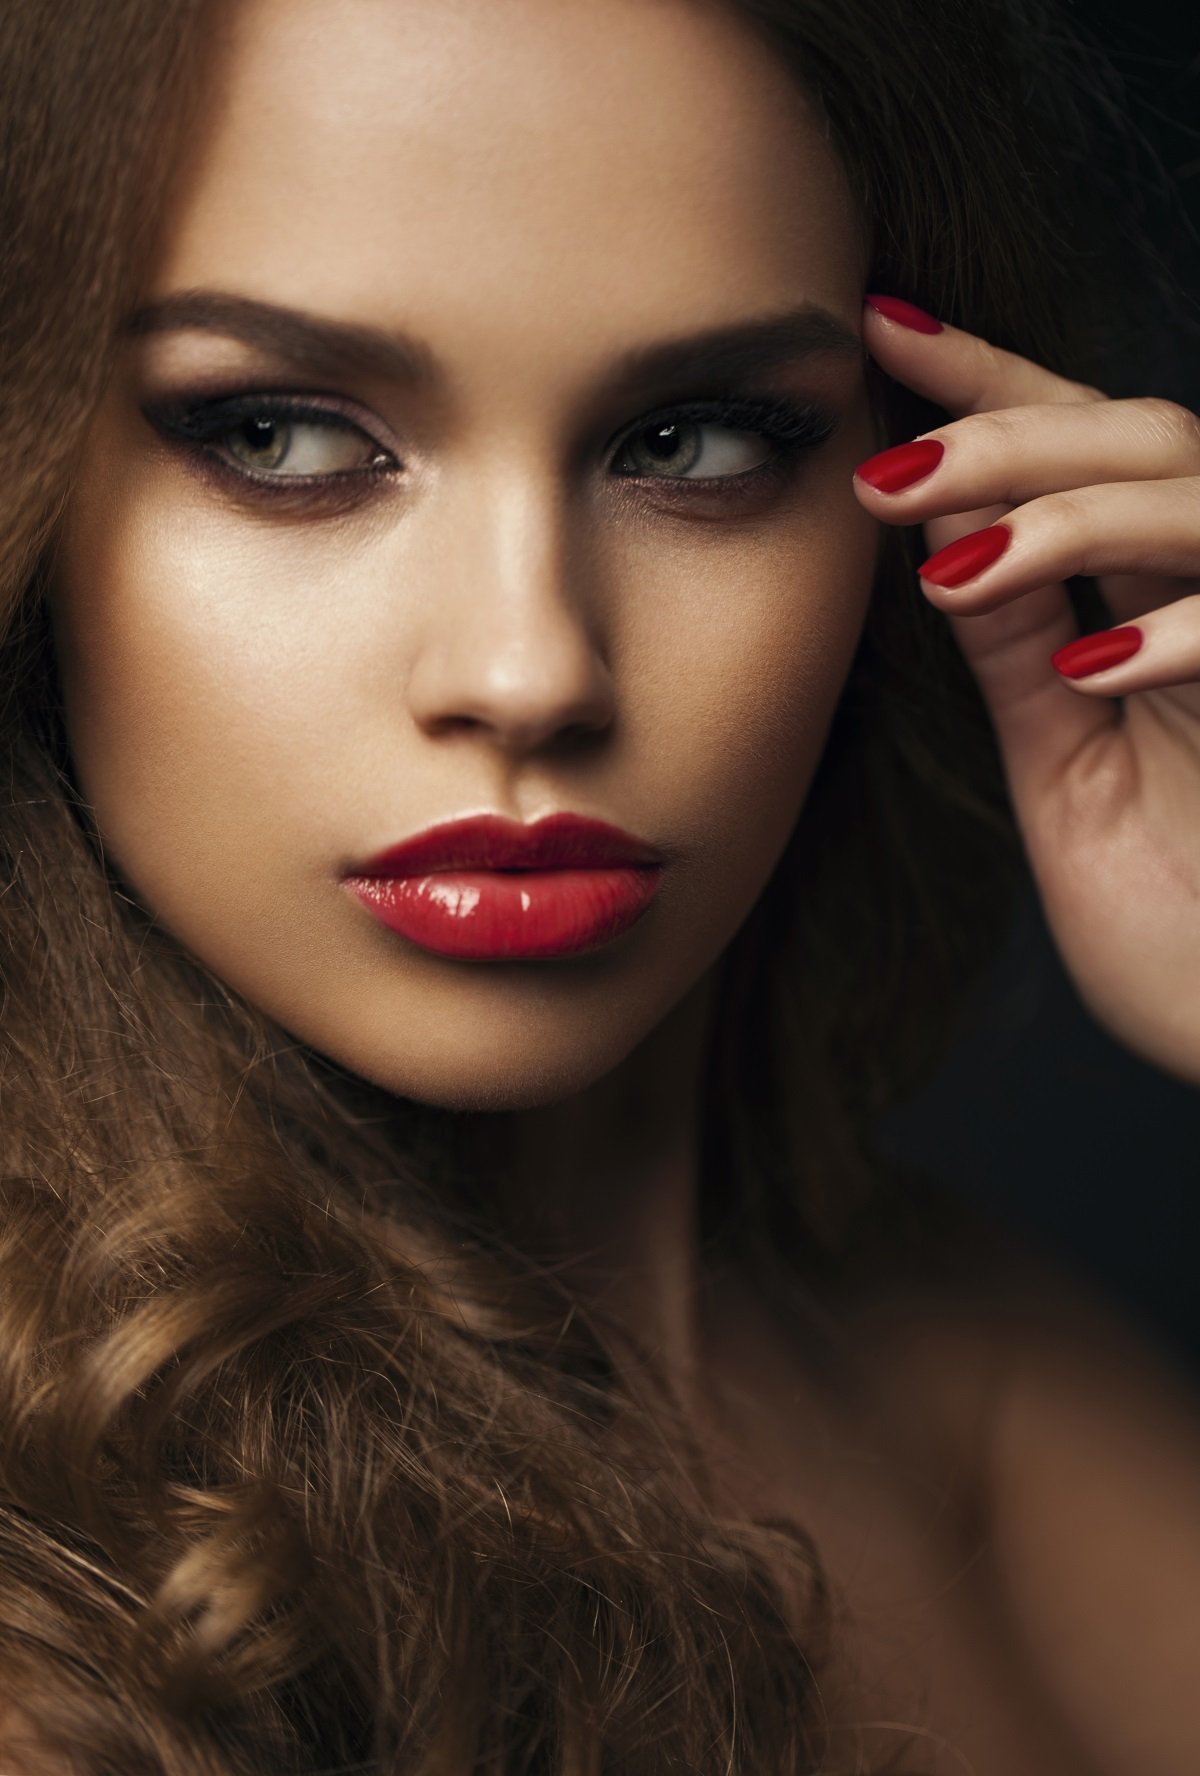 Красивый макияж девушек фото. Лилия Петрова модель. Накрашенная девушка. Красивый макияж с красной помадой. Женщины с яркими губами.